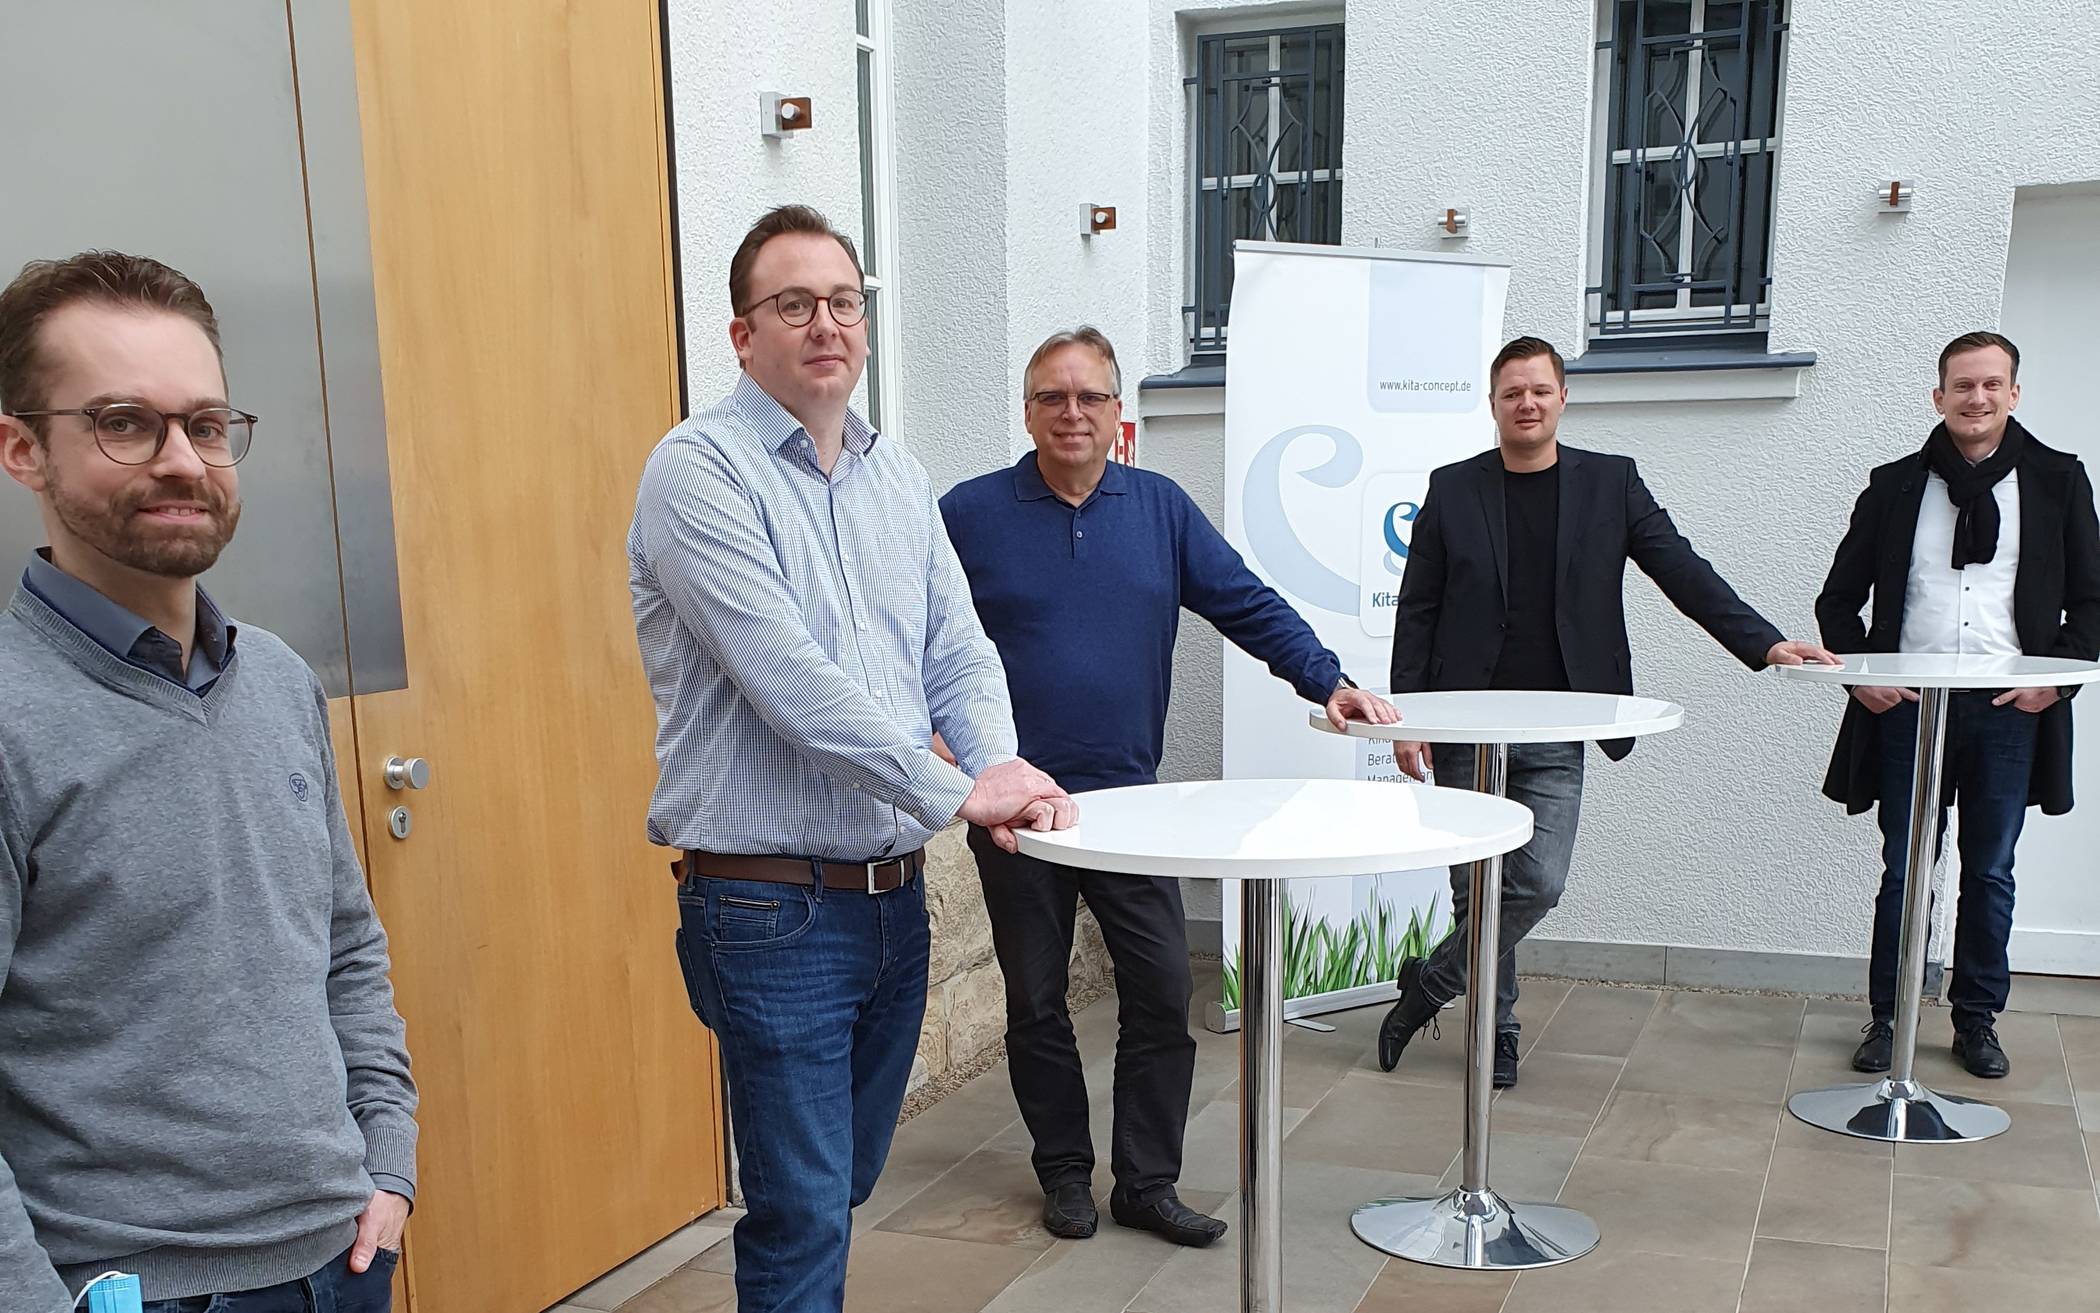  Jörg Heynkes (Mitte) mit den „Kita-Cocept“-Geschäftsführern Tim seidel, Oliver Schweer, David Brabender und Franz Reinartz (v.l.). 